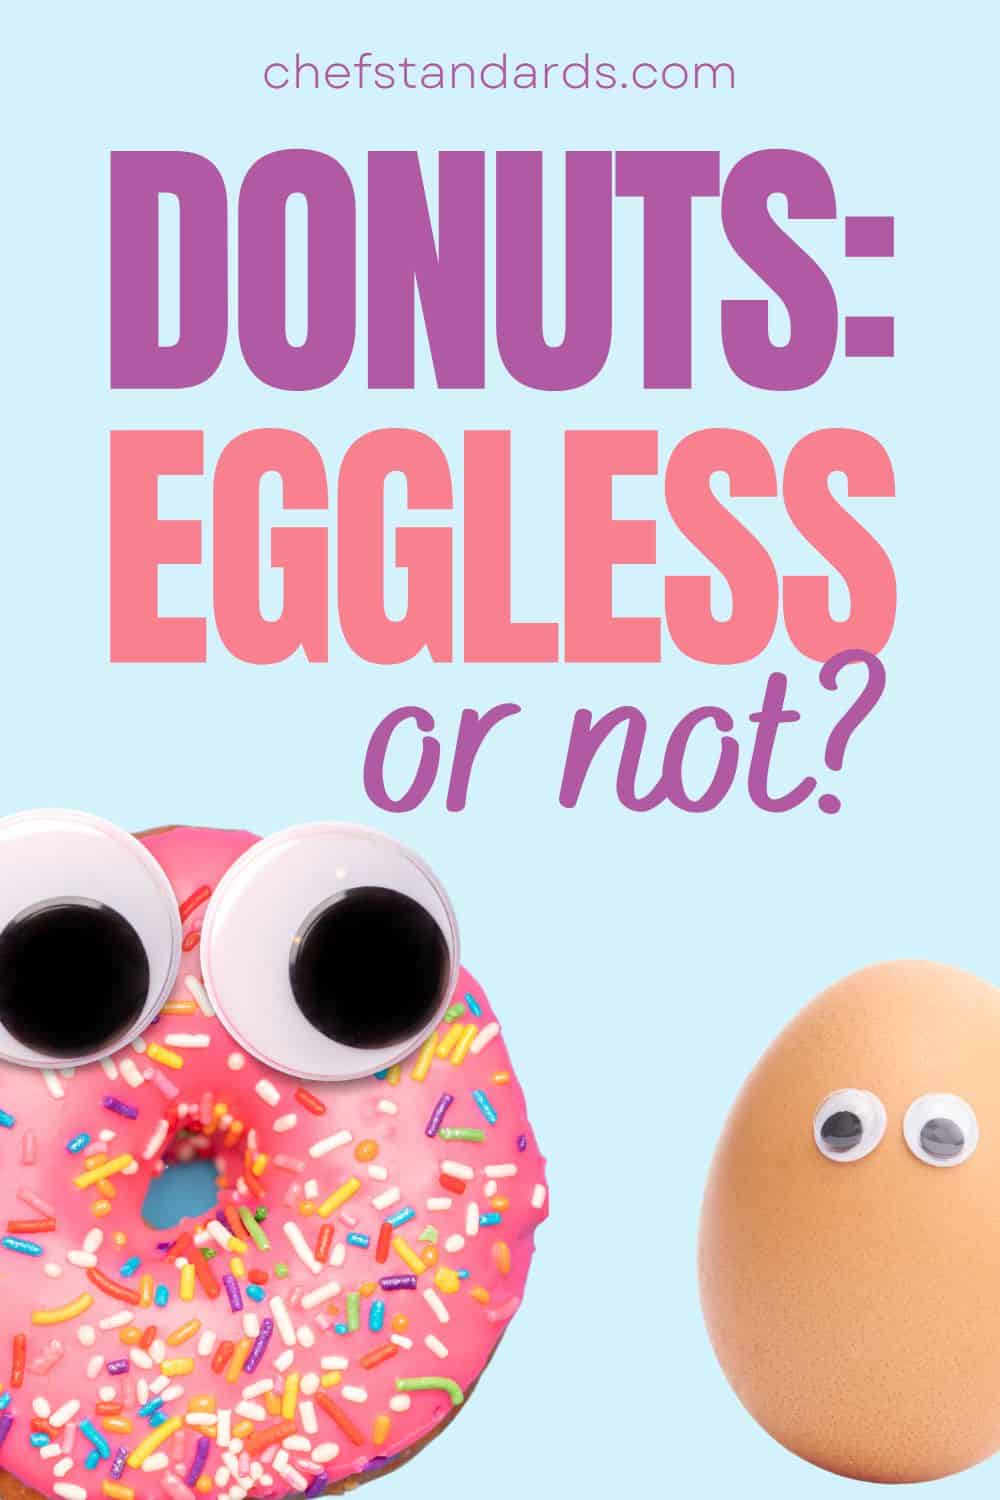 ¿Los donuts llevan huevo? En busca de donuts aptos para veganos